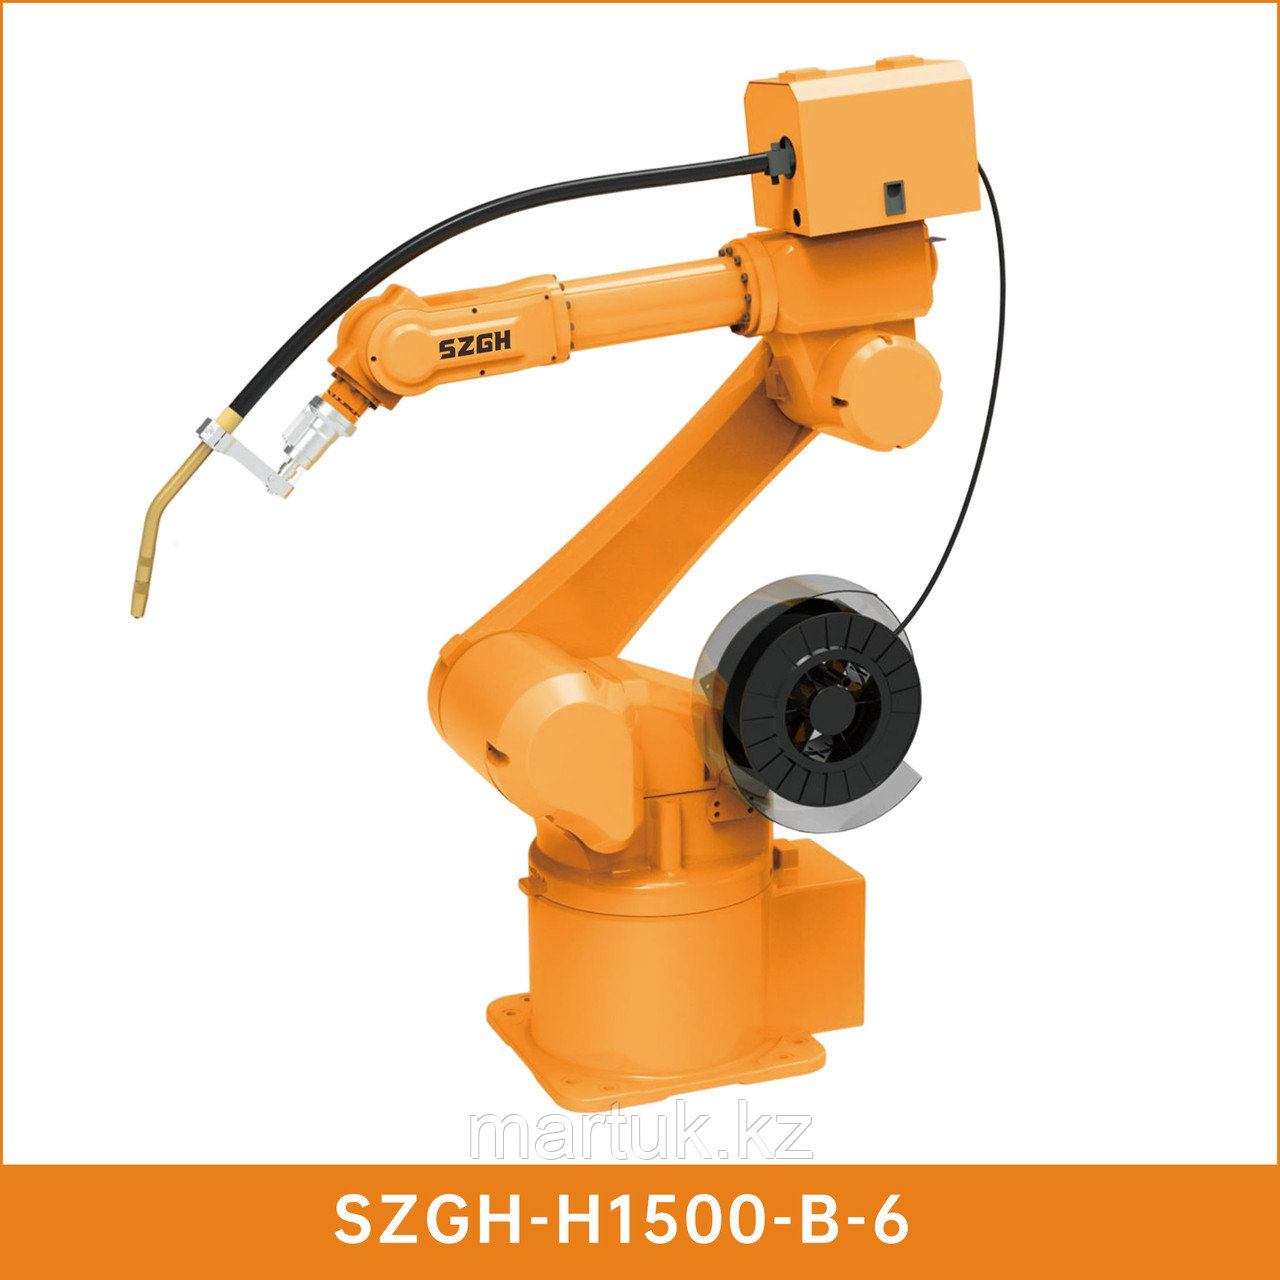 6-осевой робот SZGH-H1500-B-6